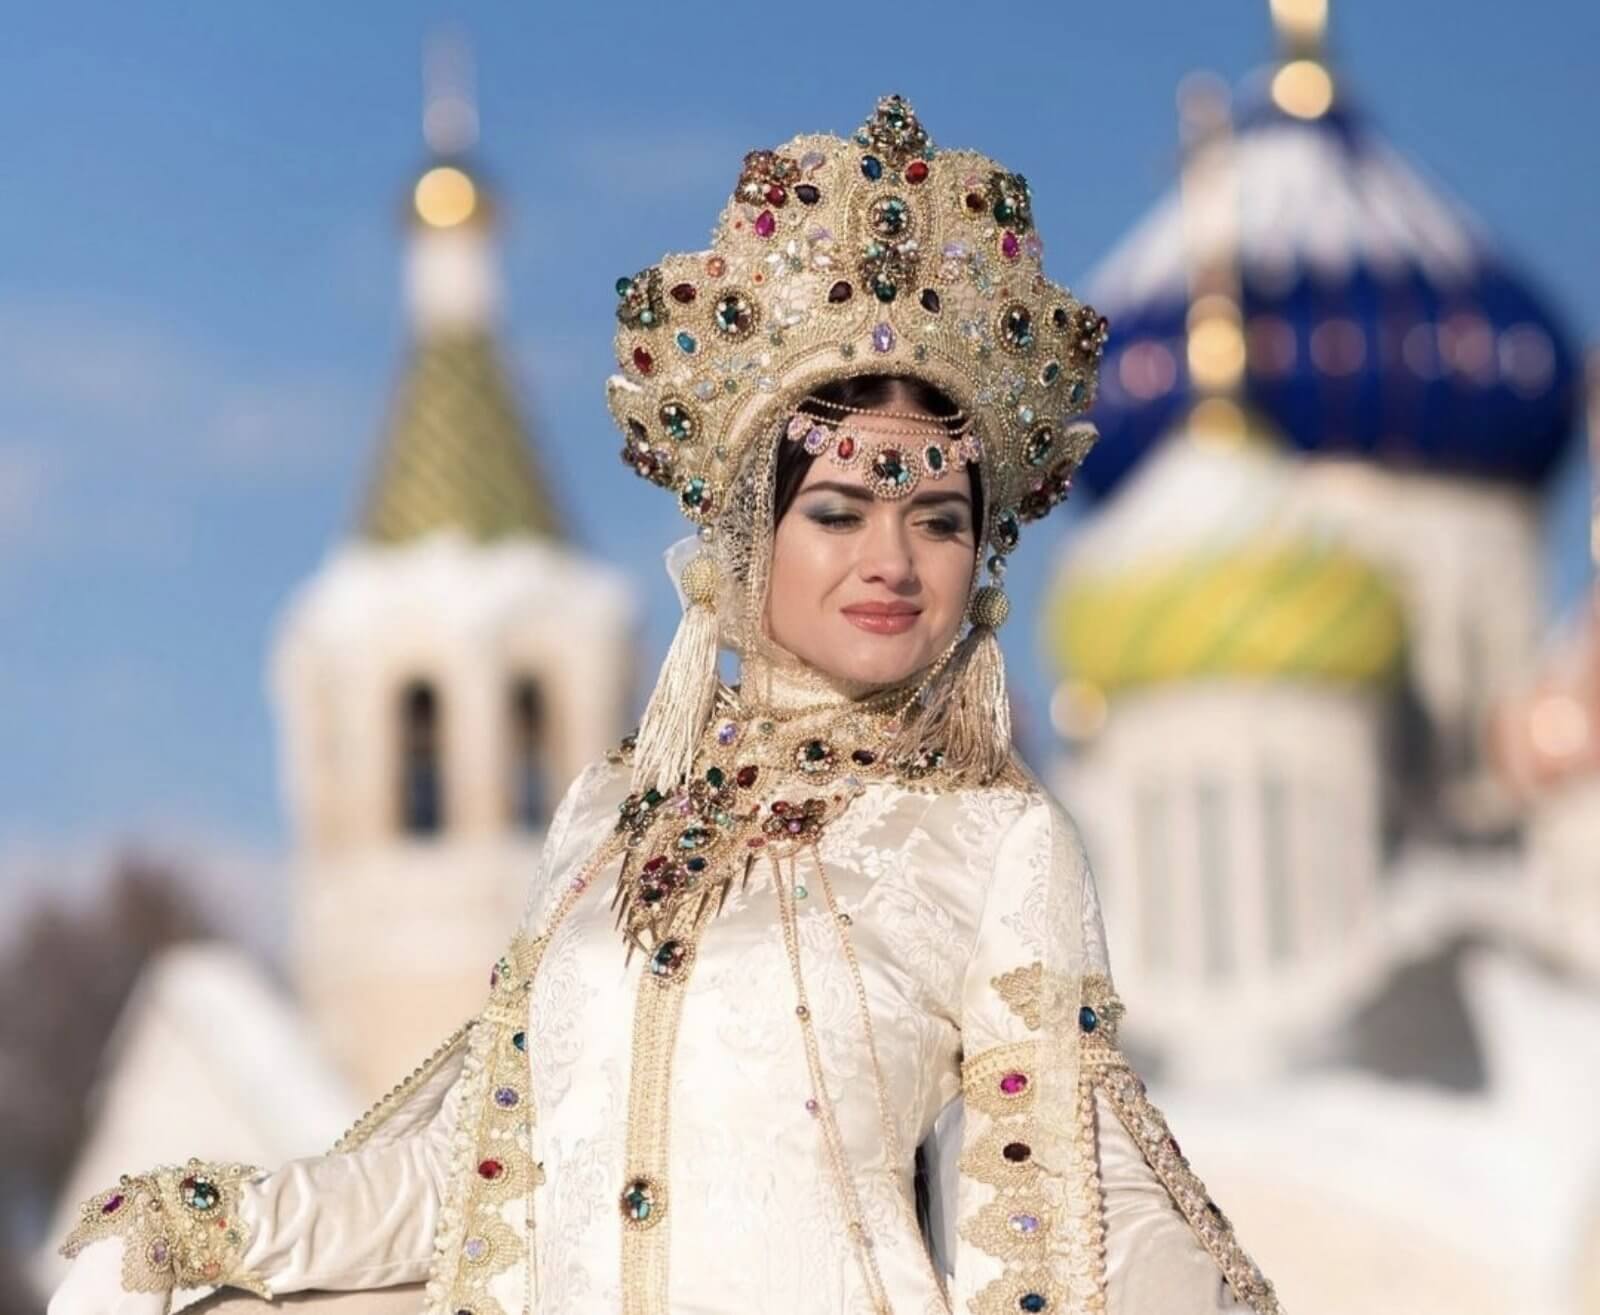 Russian weddings